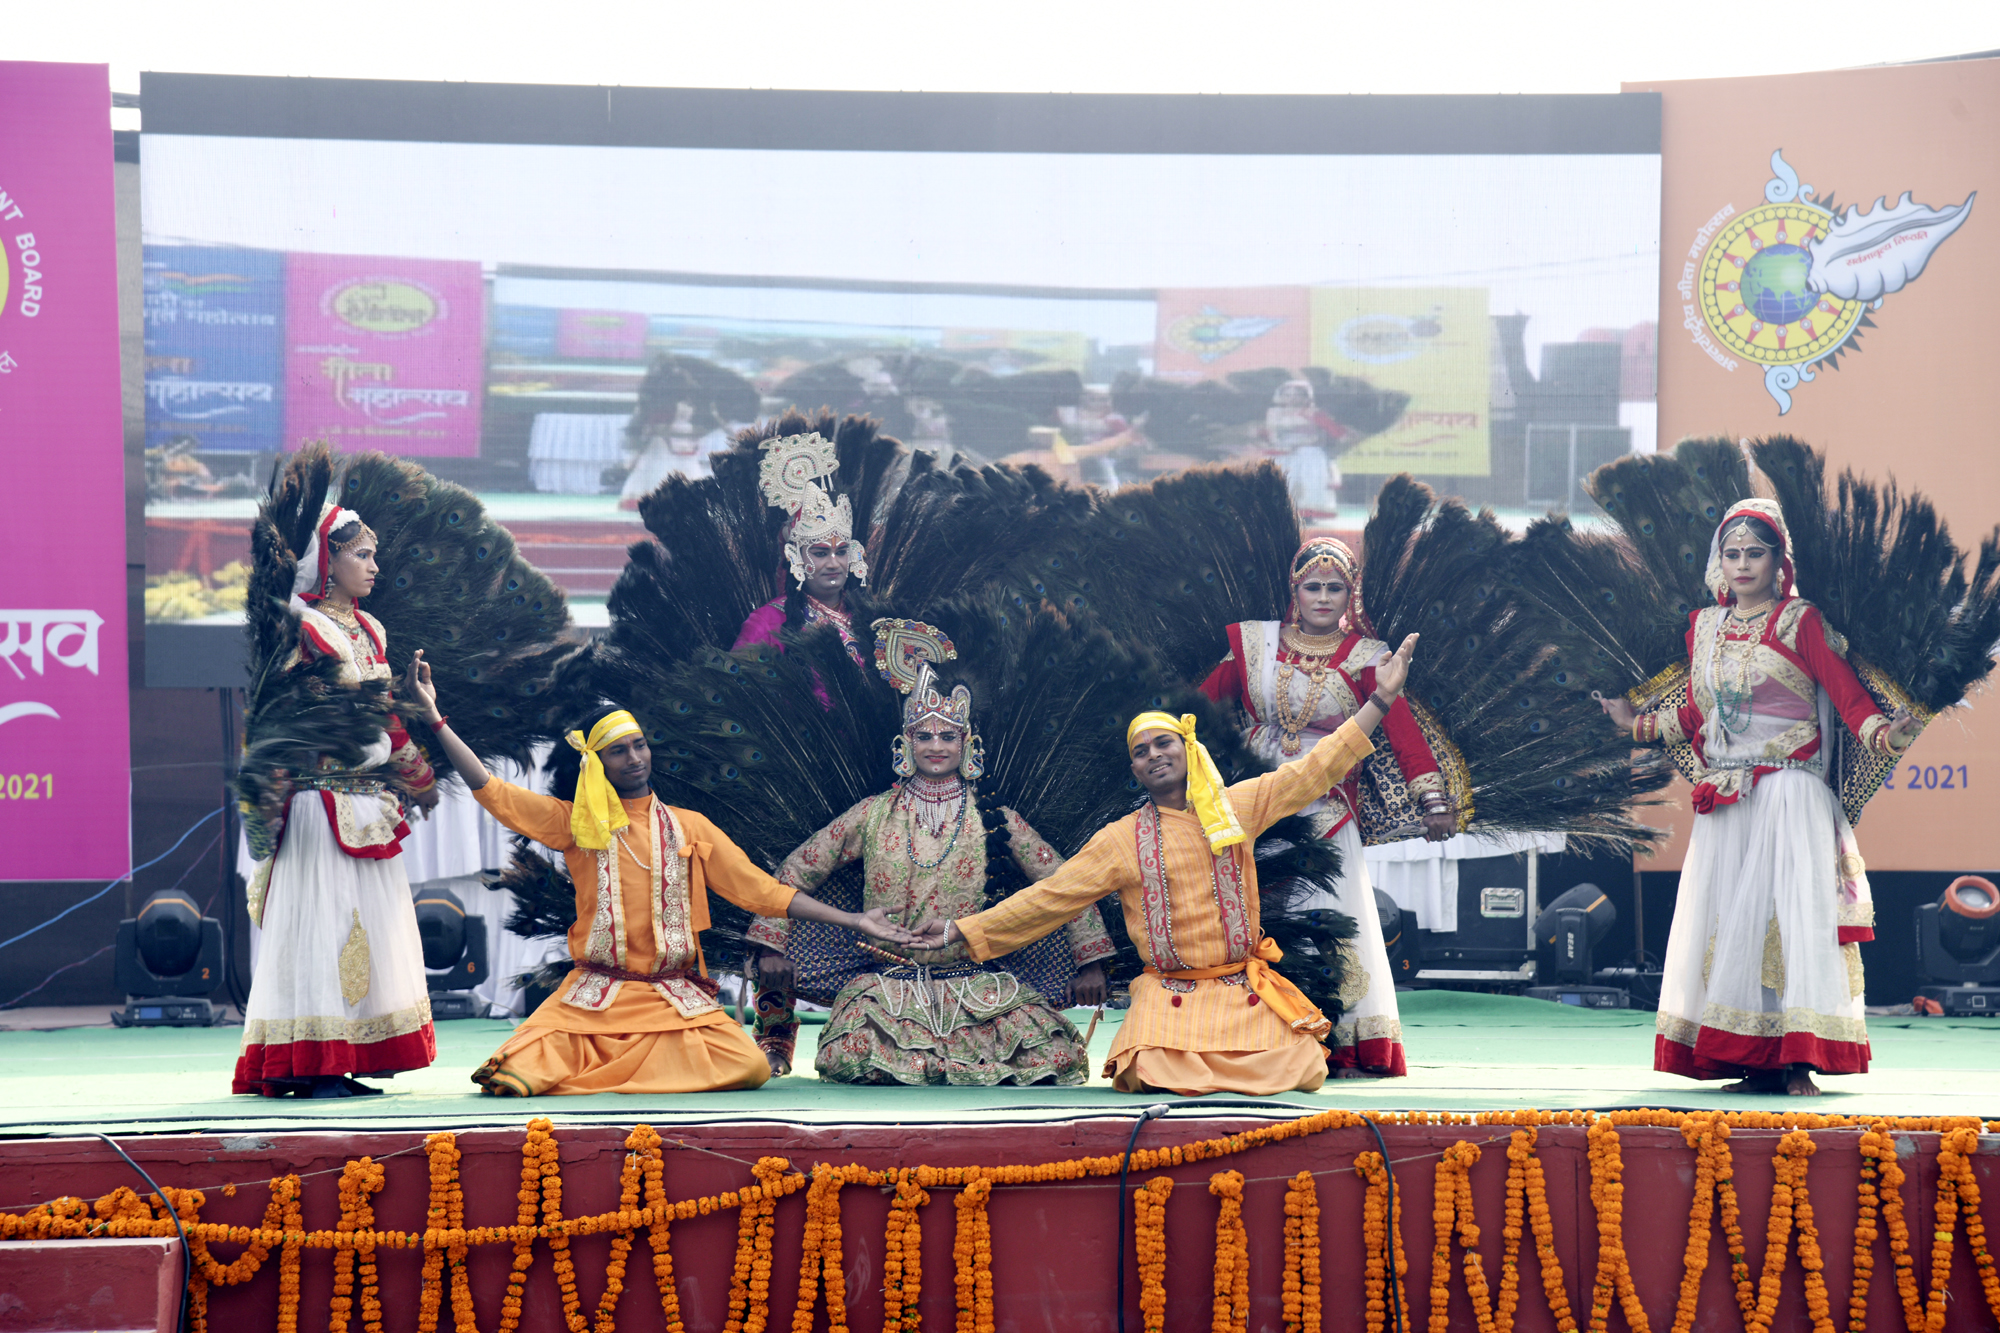 हाथों में गीता, सीने में कुराण रखेंगे, सबसे आगे अपना हिन्दुस्तान रखेंगे, मयूर नृत्य ने मोहा सभी पर्यटकों का मन, विभिन्न राज्यों के लोक नृत्यों से रूबरू हुए पर्यटक